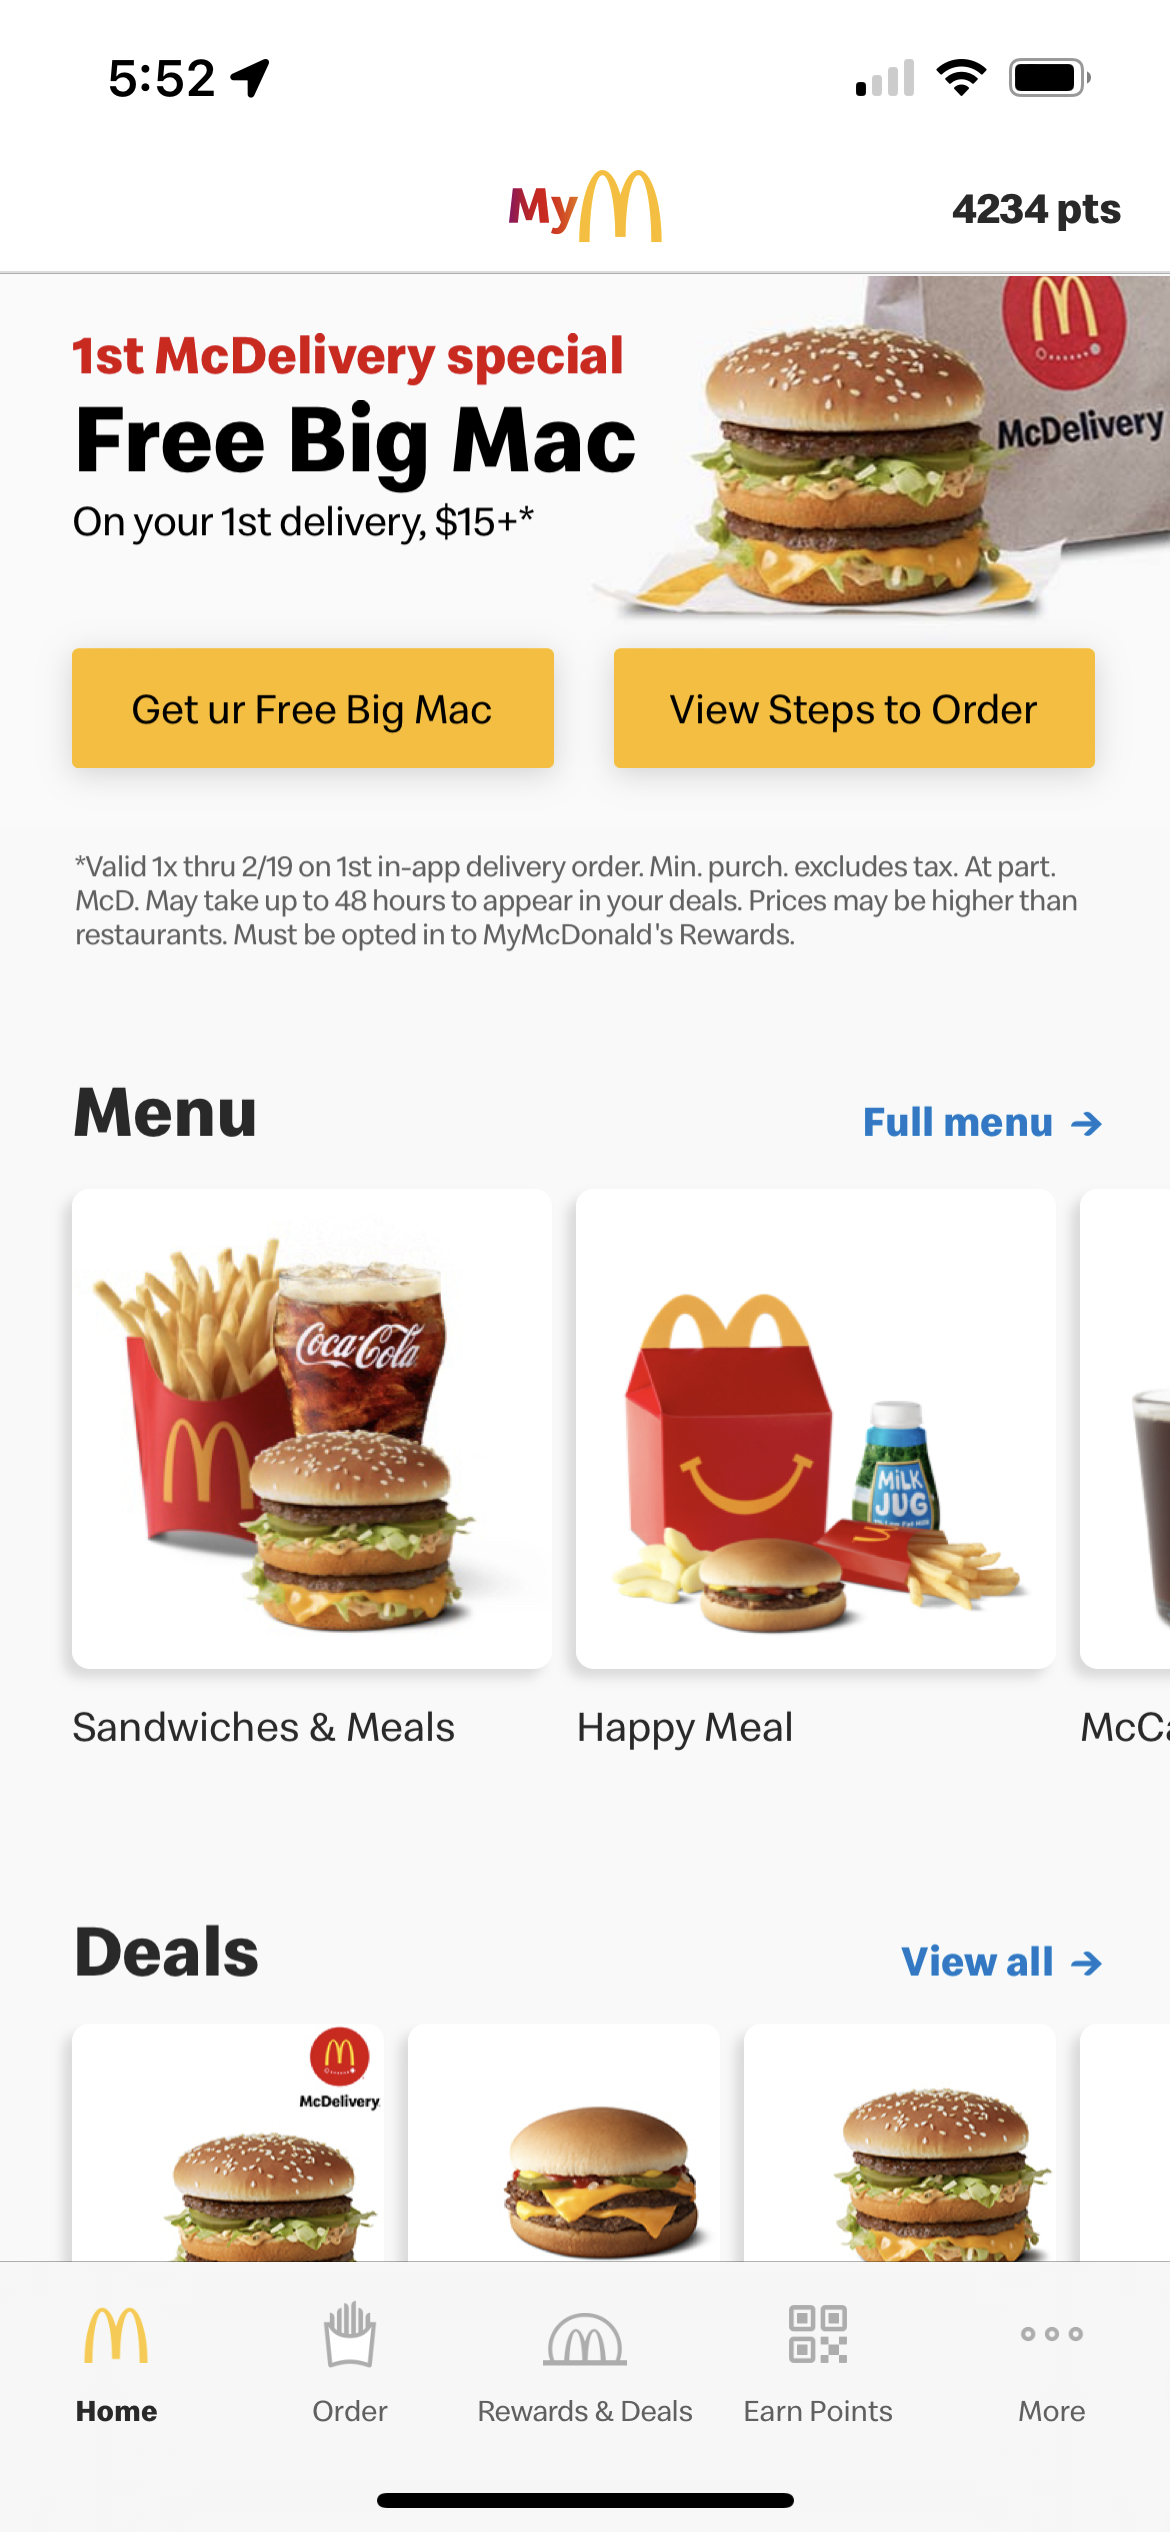 맥도날드 앱